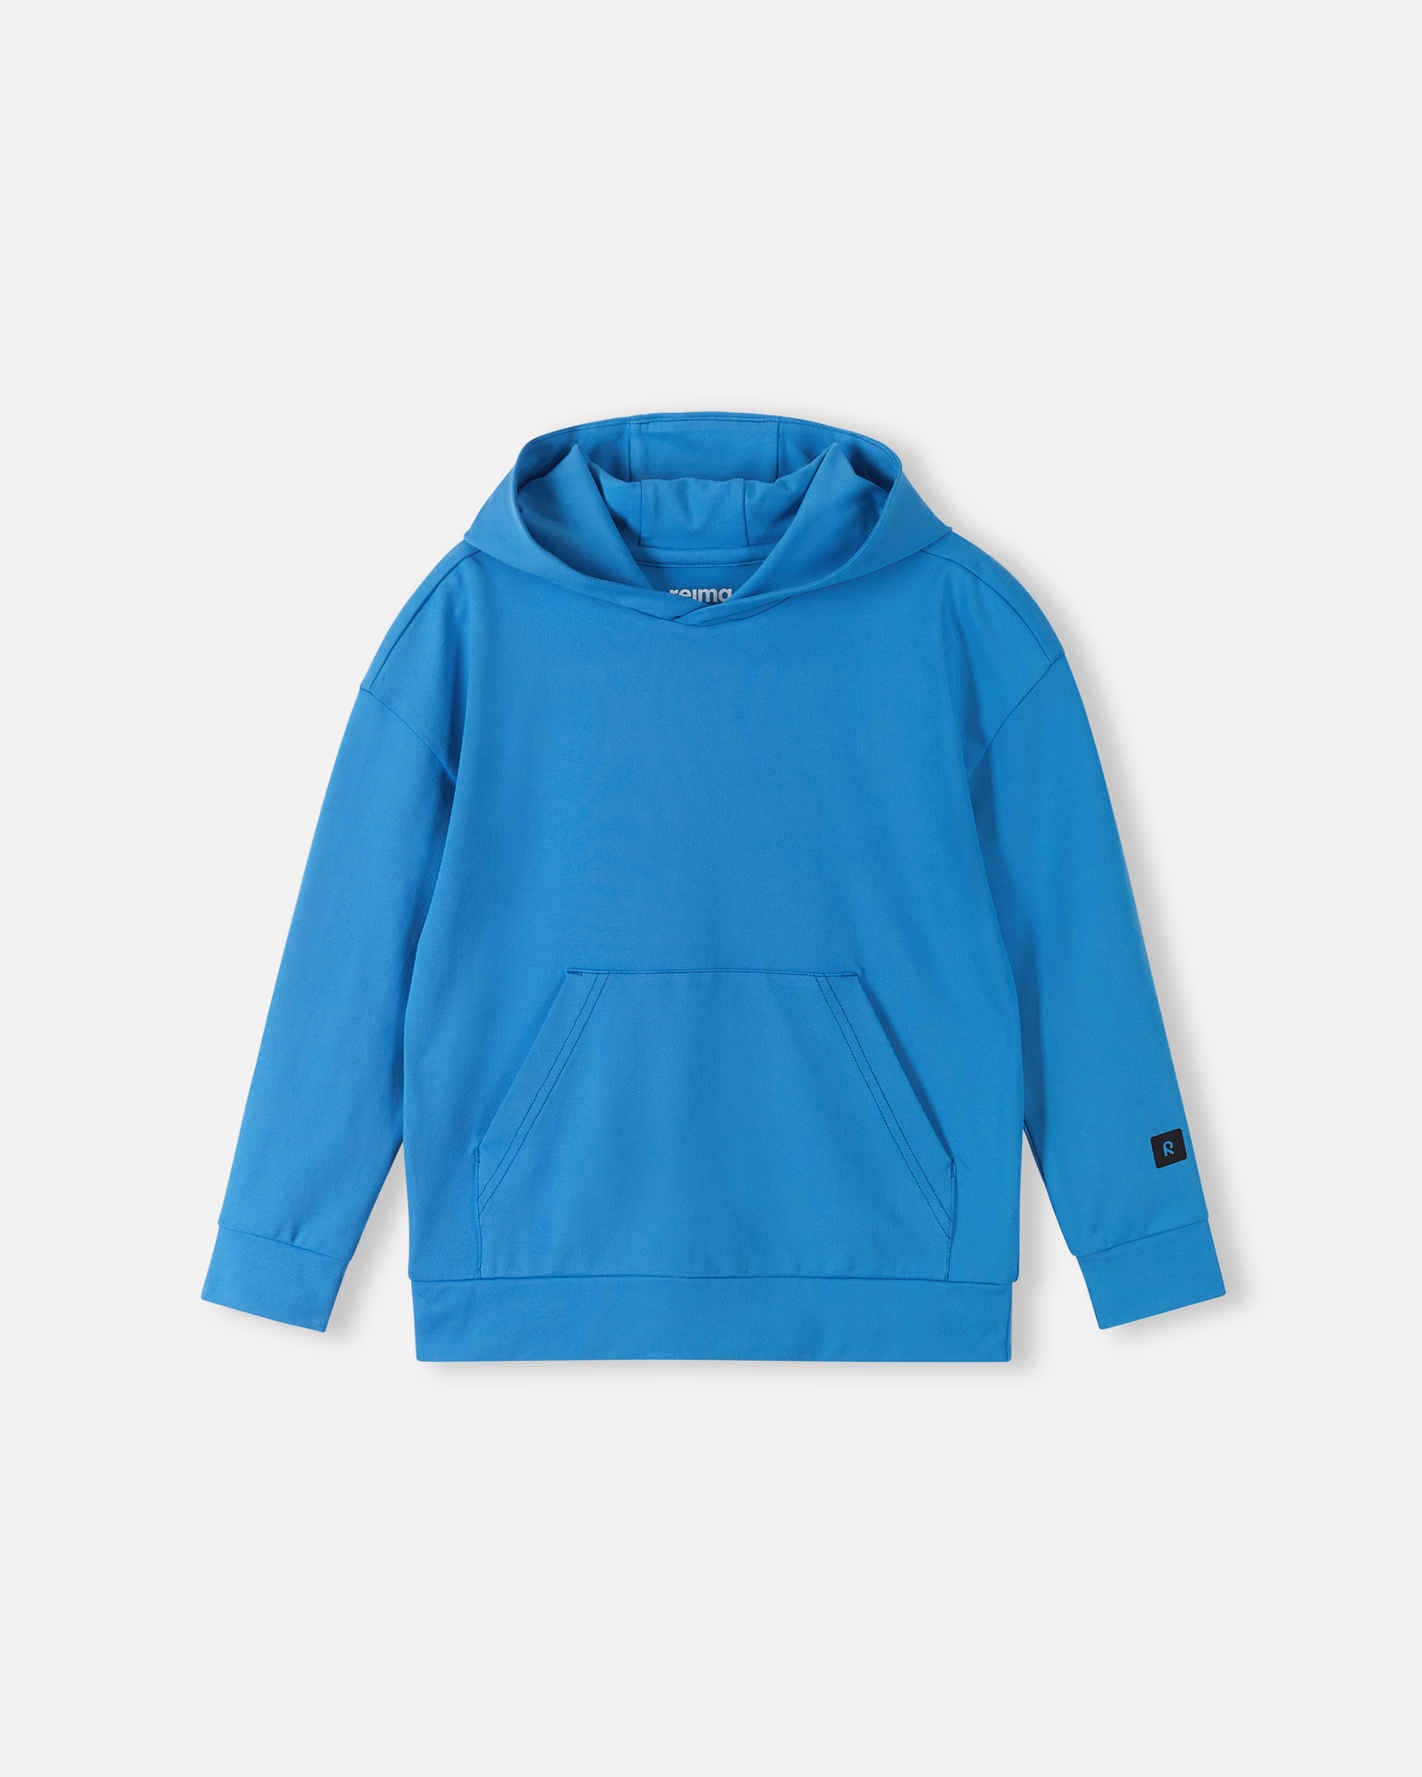 Reima Kids' UV protective hoodie Luotaus